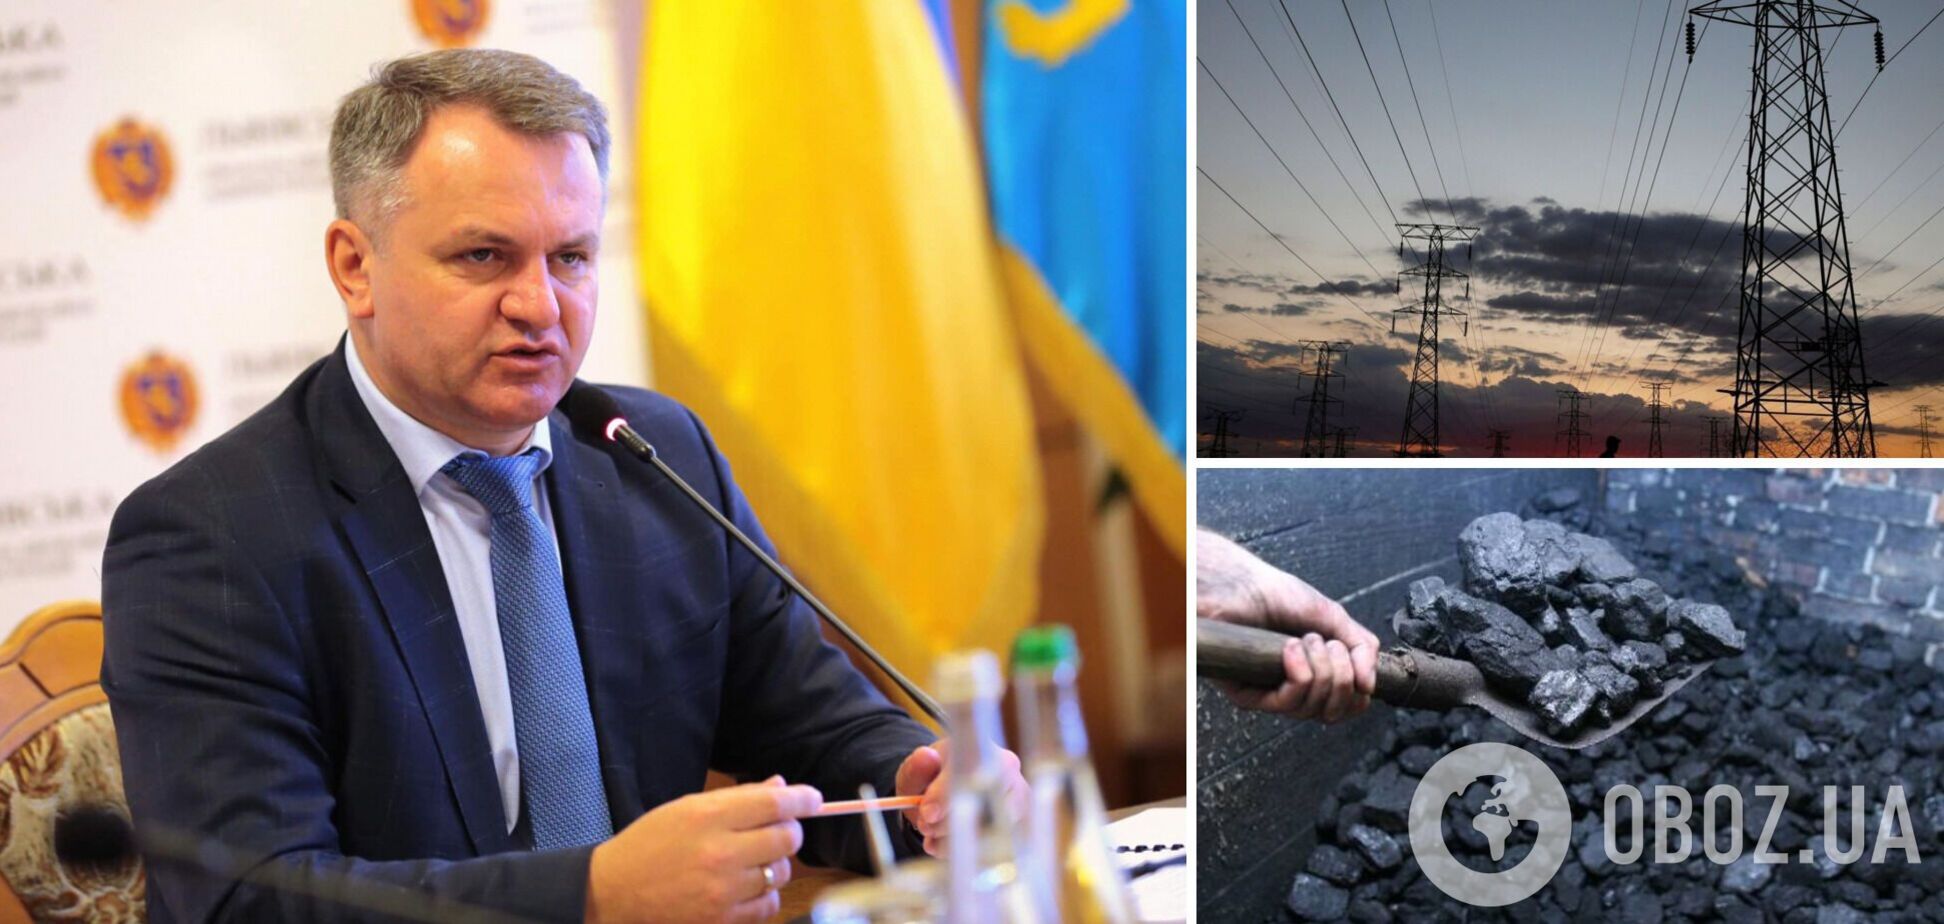 Украина оказалась в энергетическом кризисе, подчеркнул Синютка и назвал причины